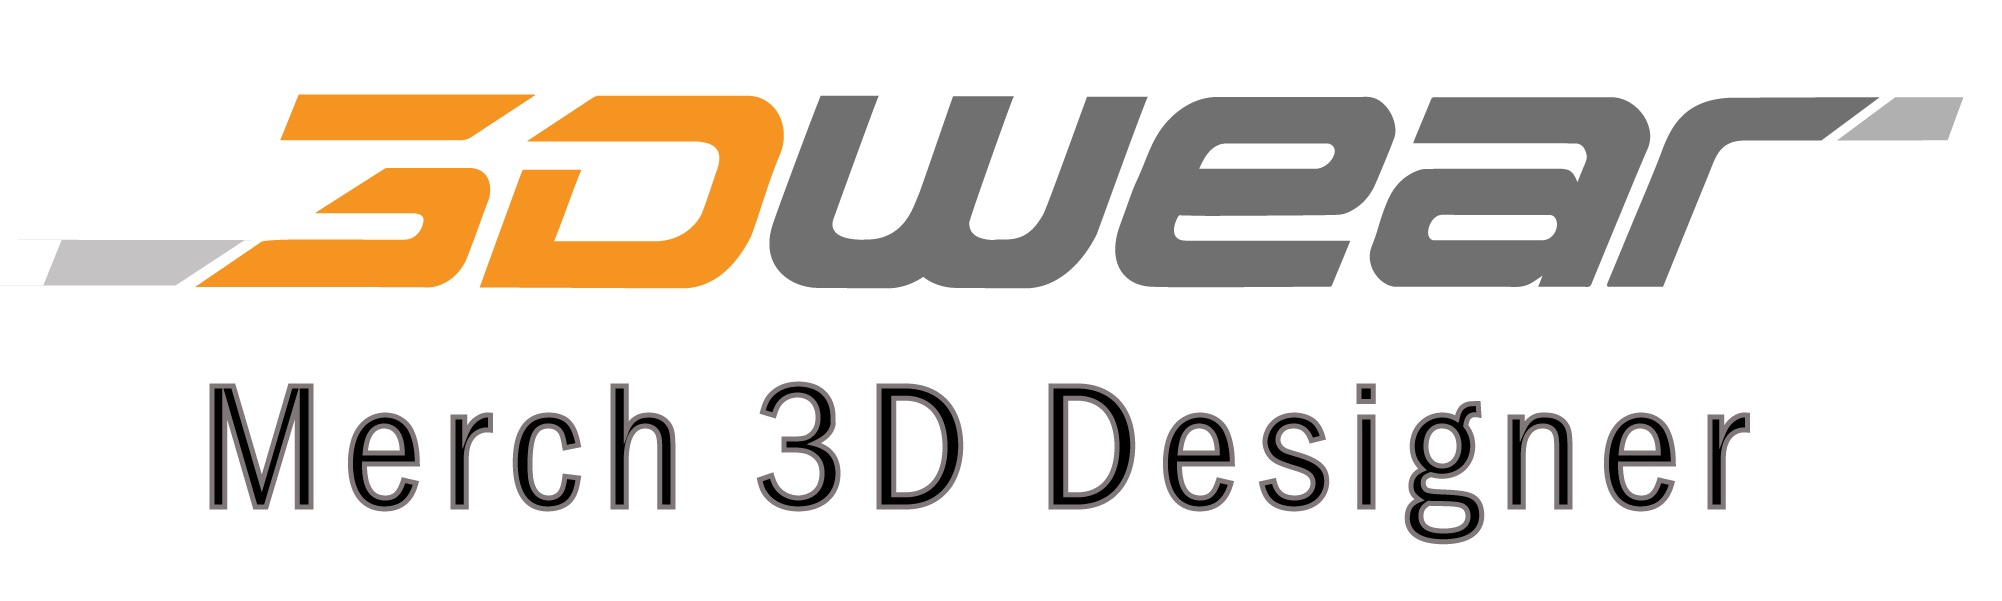 3dwear designer